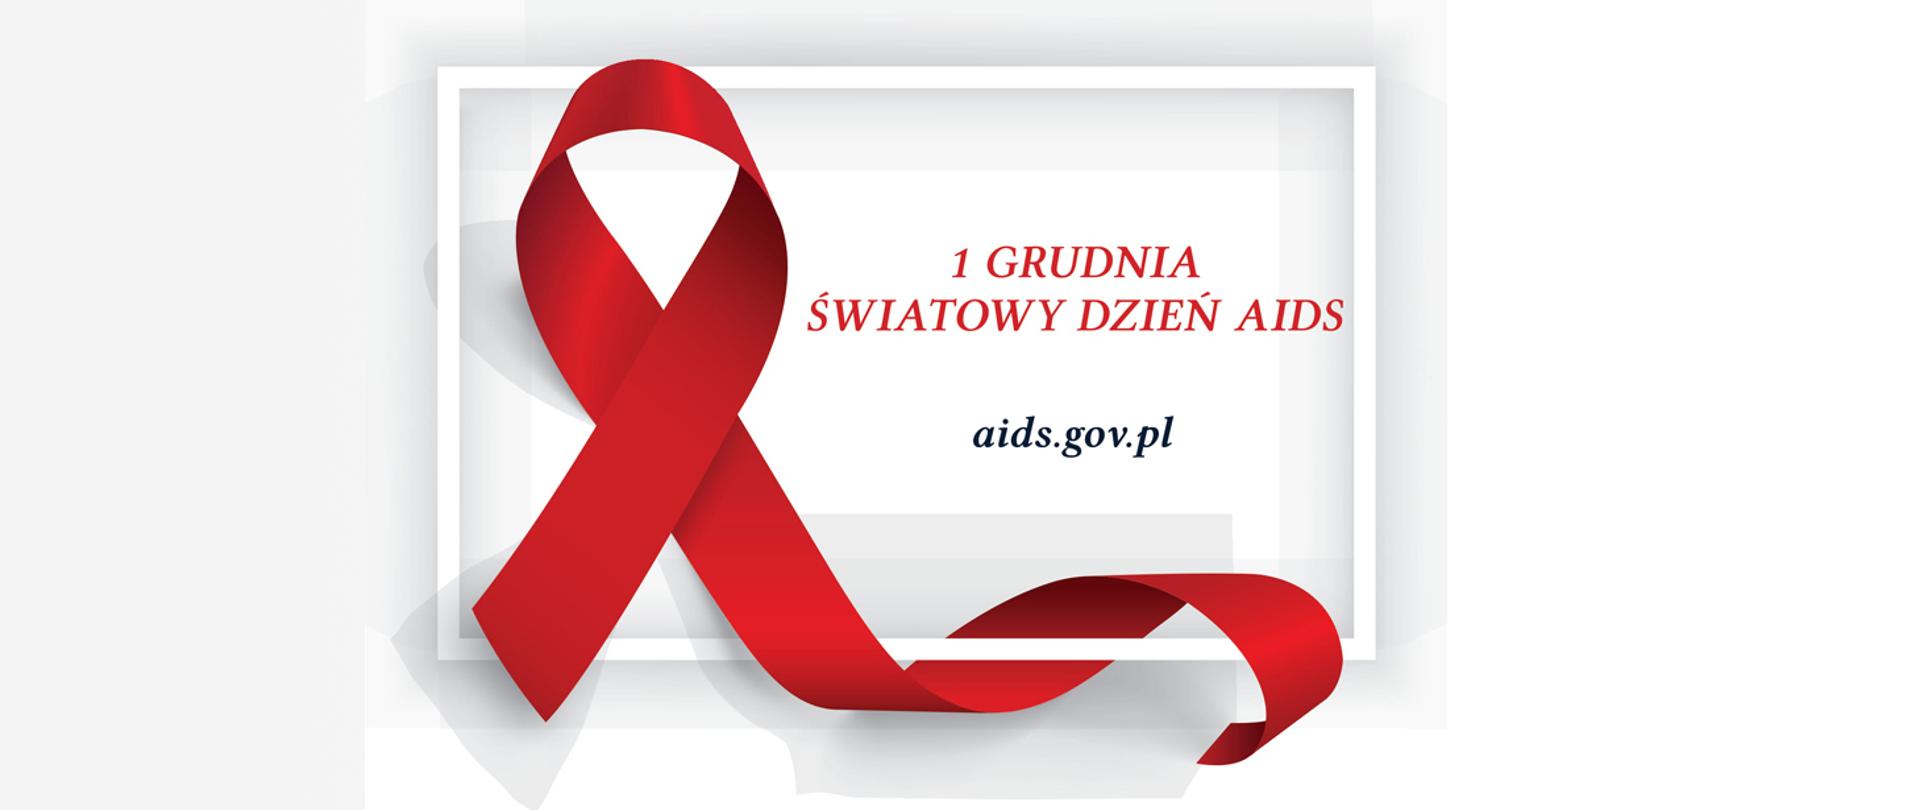 Czerwona wstążeczka - symbol Światowego Dnia AIDS obchodzonego 1 grudnia. Adres strony www: aids.gov.pl